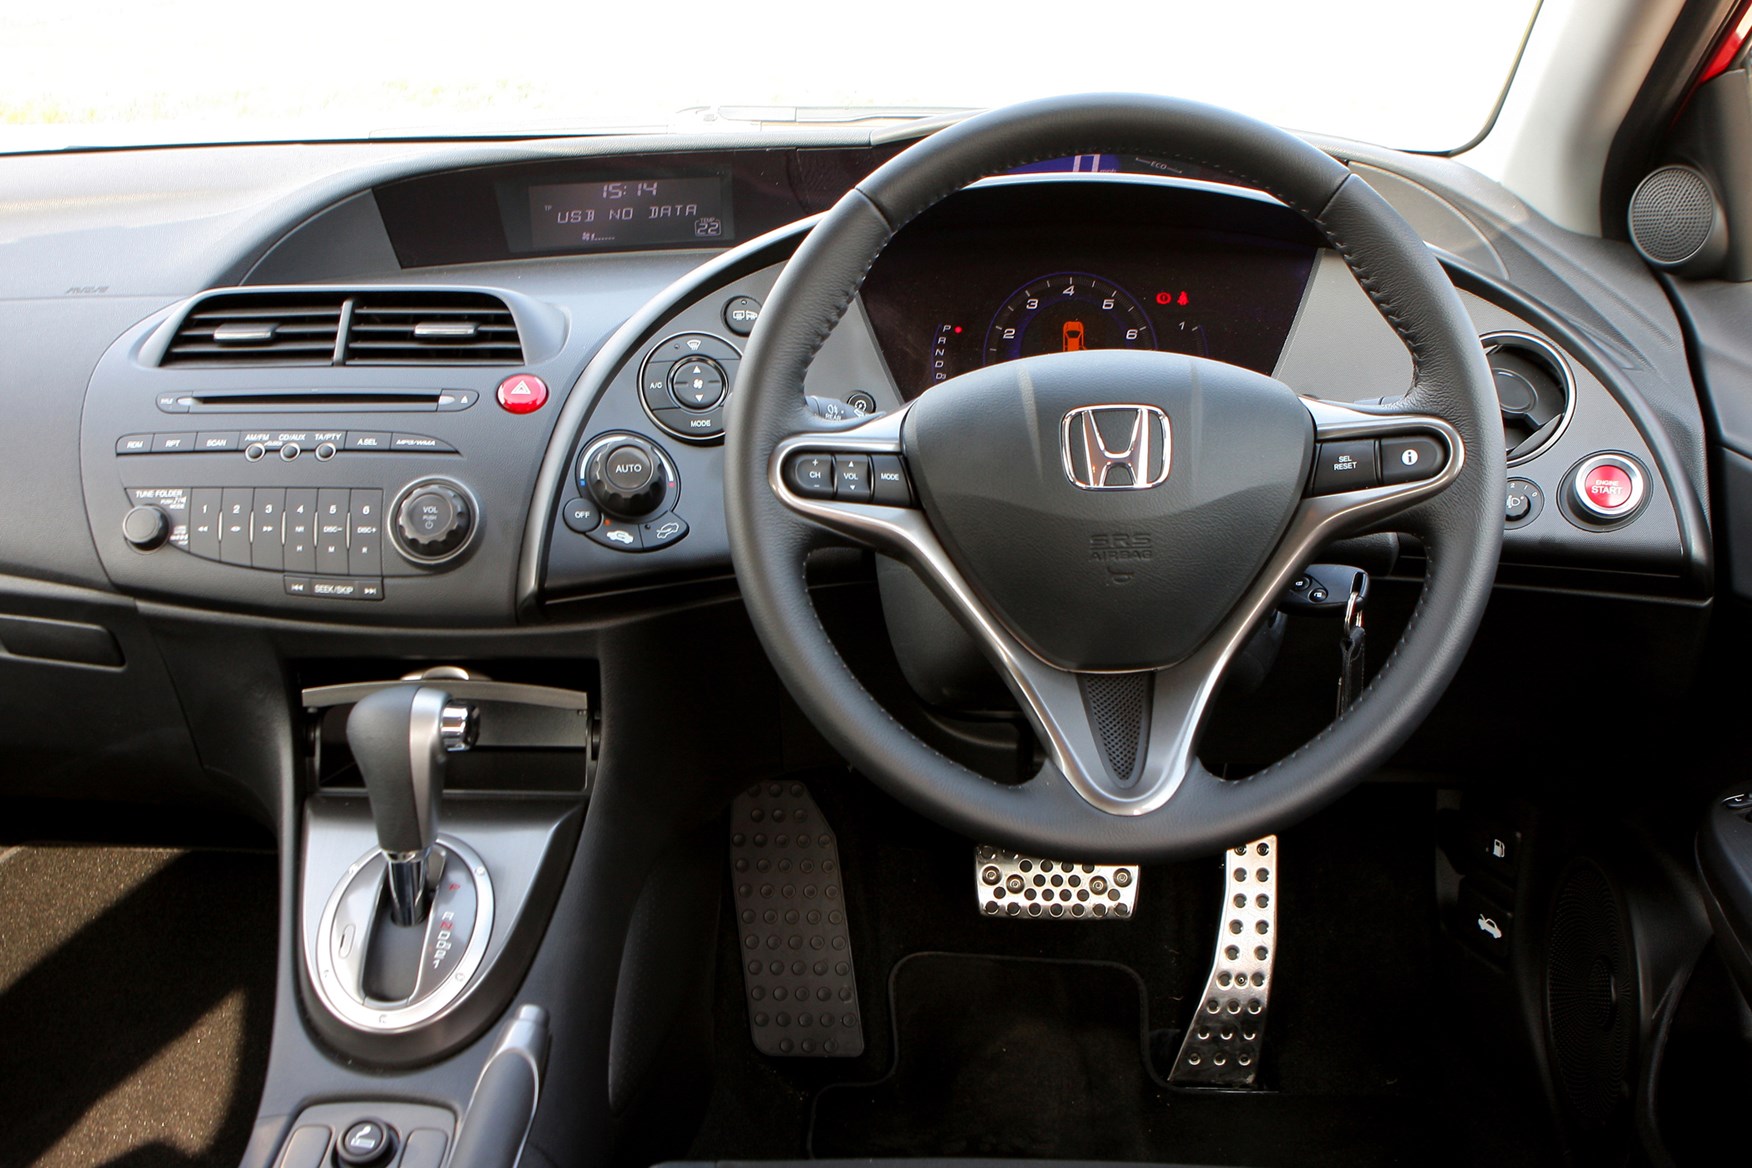 Honda civic автомат. Honda Civic 2006 Hatchback. Honda Civic Hatchback 2006-2011. Honda Civic 2006 хэтчбек салон. Honda Civic 2006 Hatchback салон.